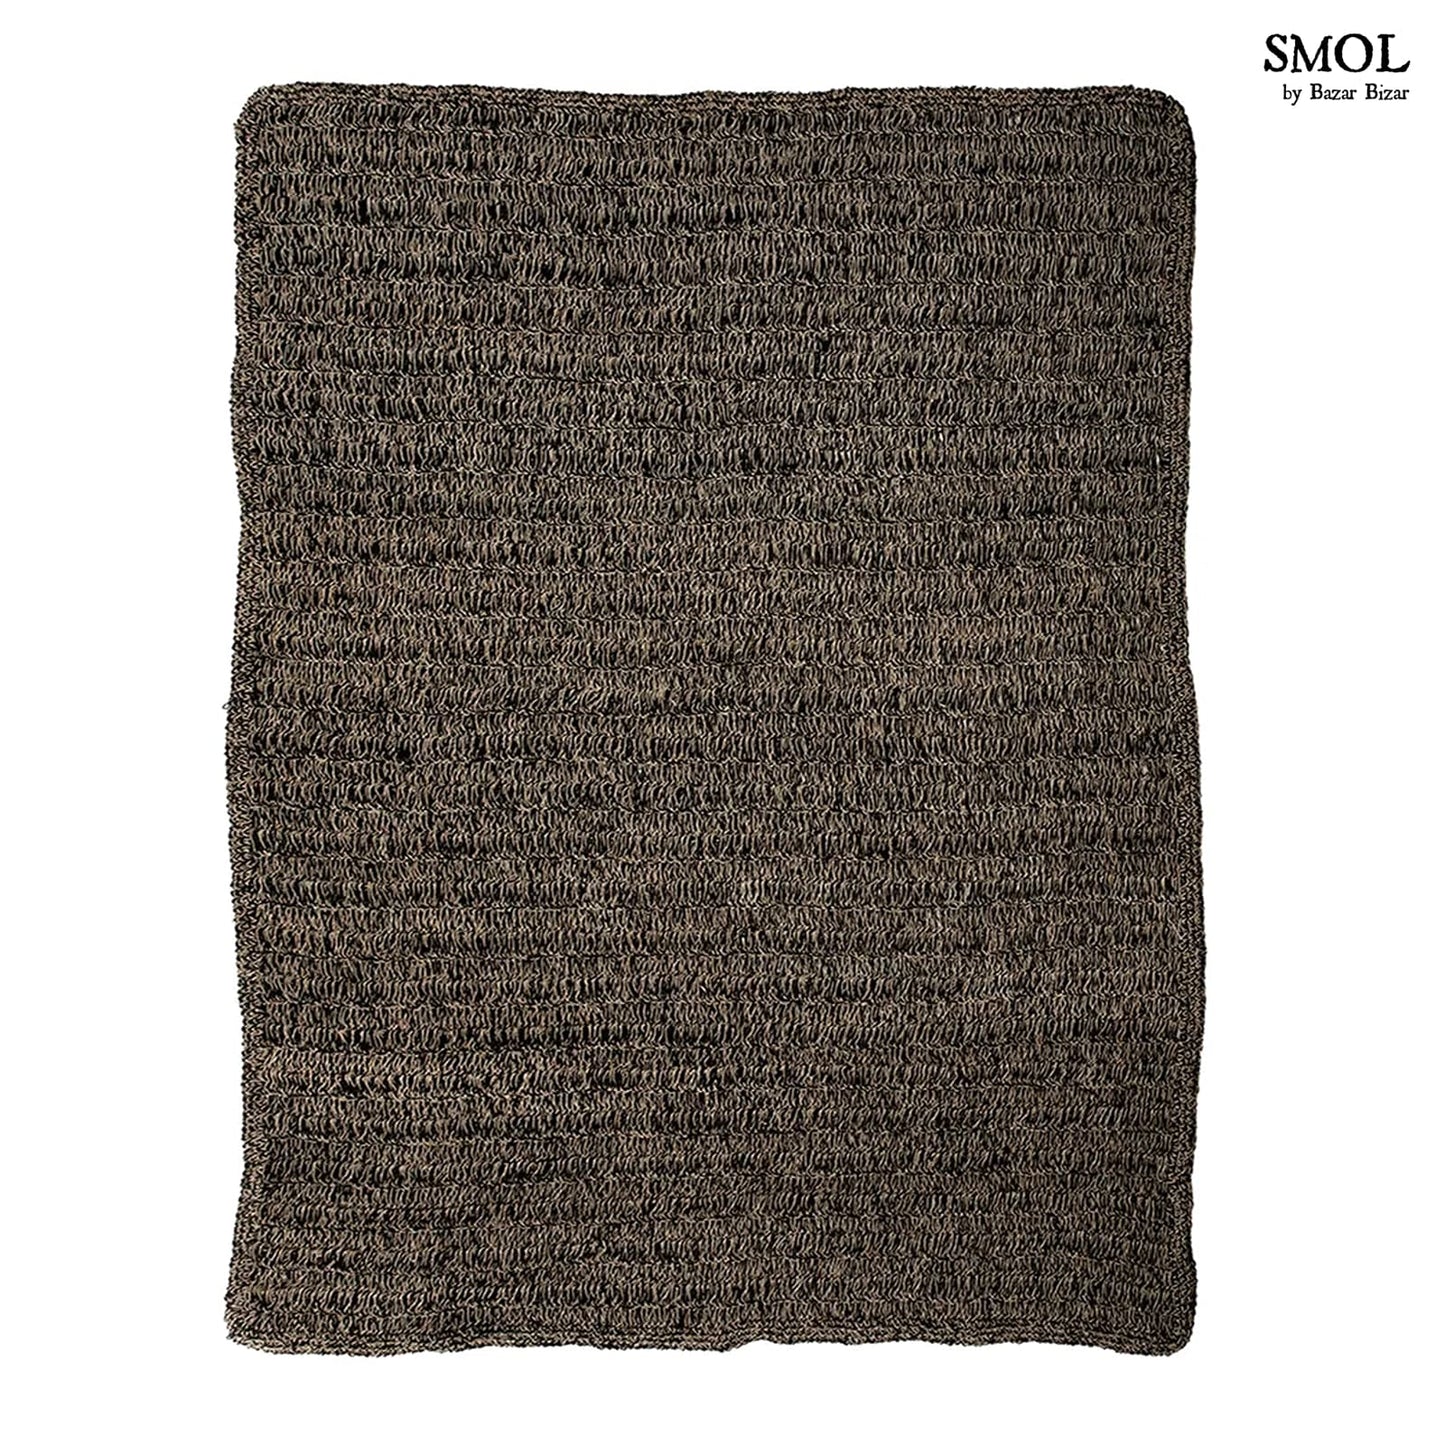 smol.hu-SINTA, fekete szőnyeg, 240x180 cm termékképe